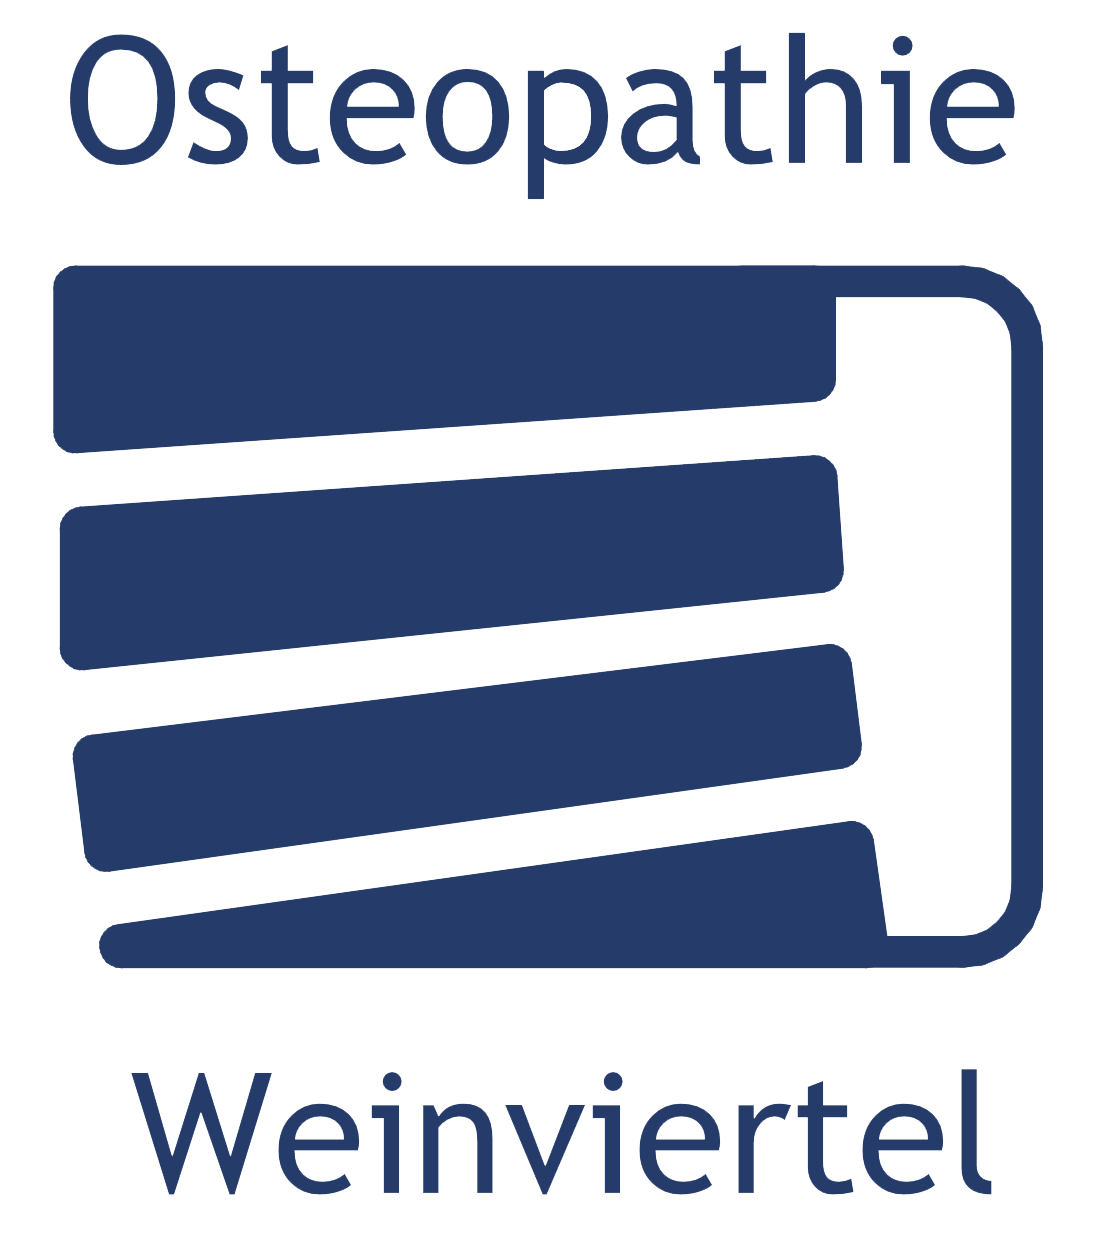 osteopathie weinviertel | ingo janous | zistersdorf niederösterreich